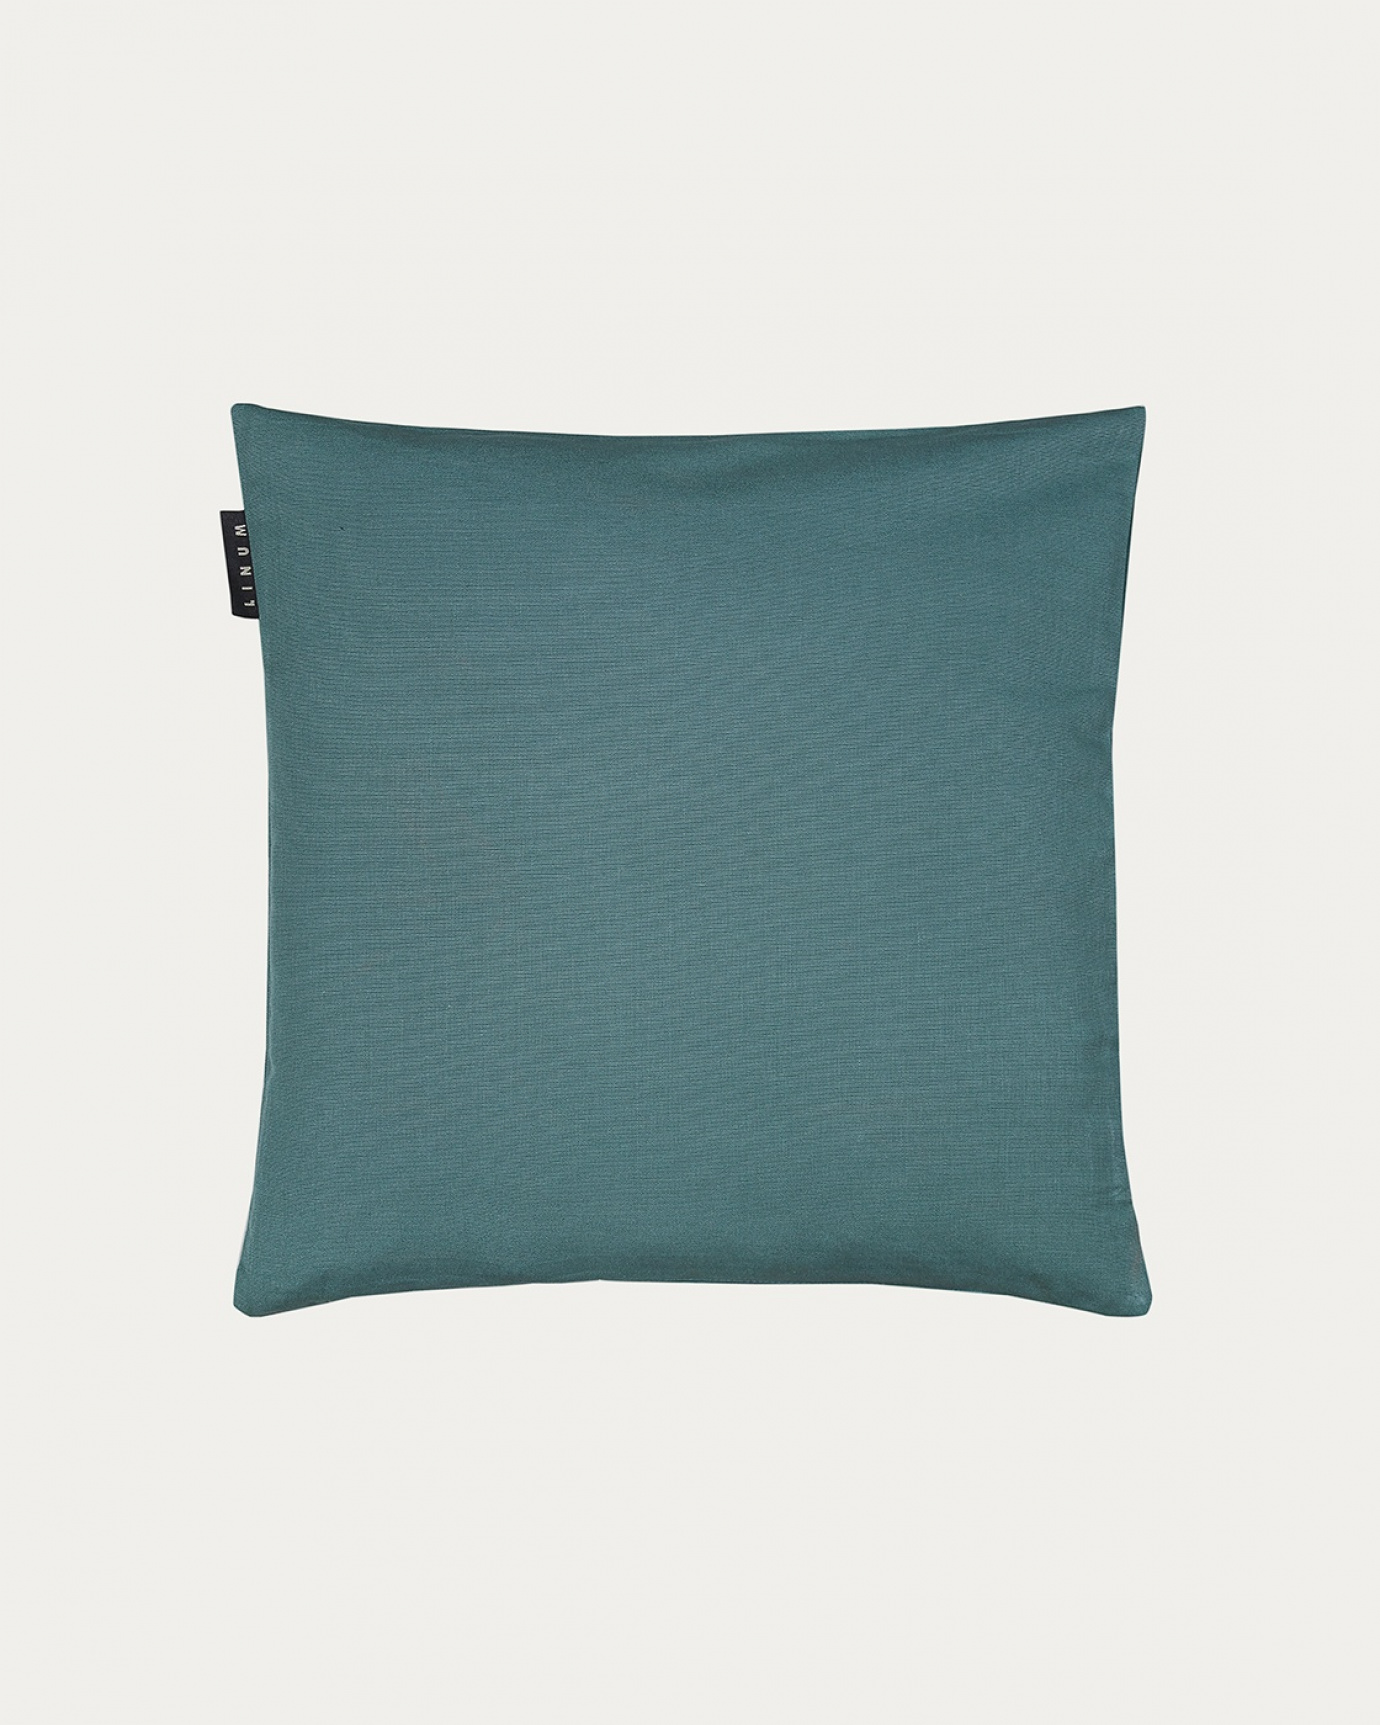 Image du produit housse de coussin ANNABELL gris foncé turquoise en coton doux de LINUM DESIGN. Taille 40 x 40 cm.